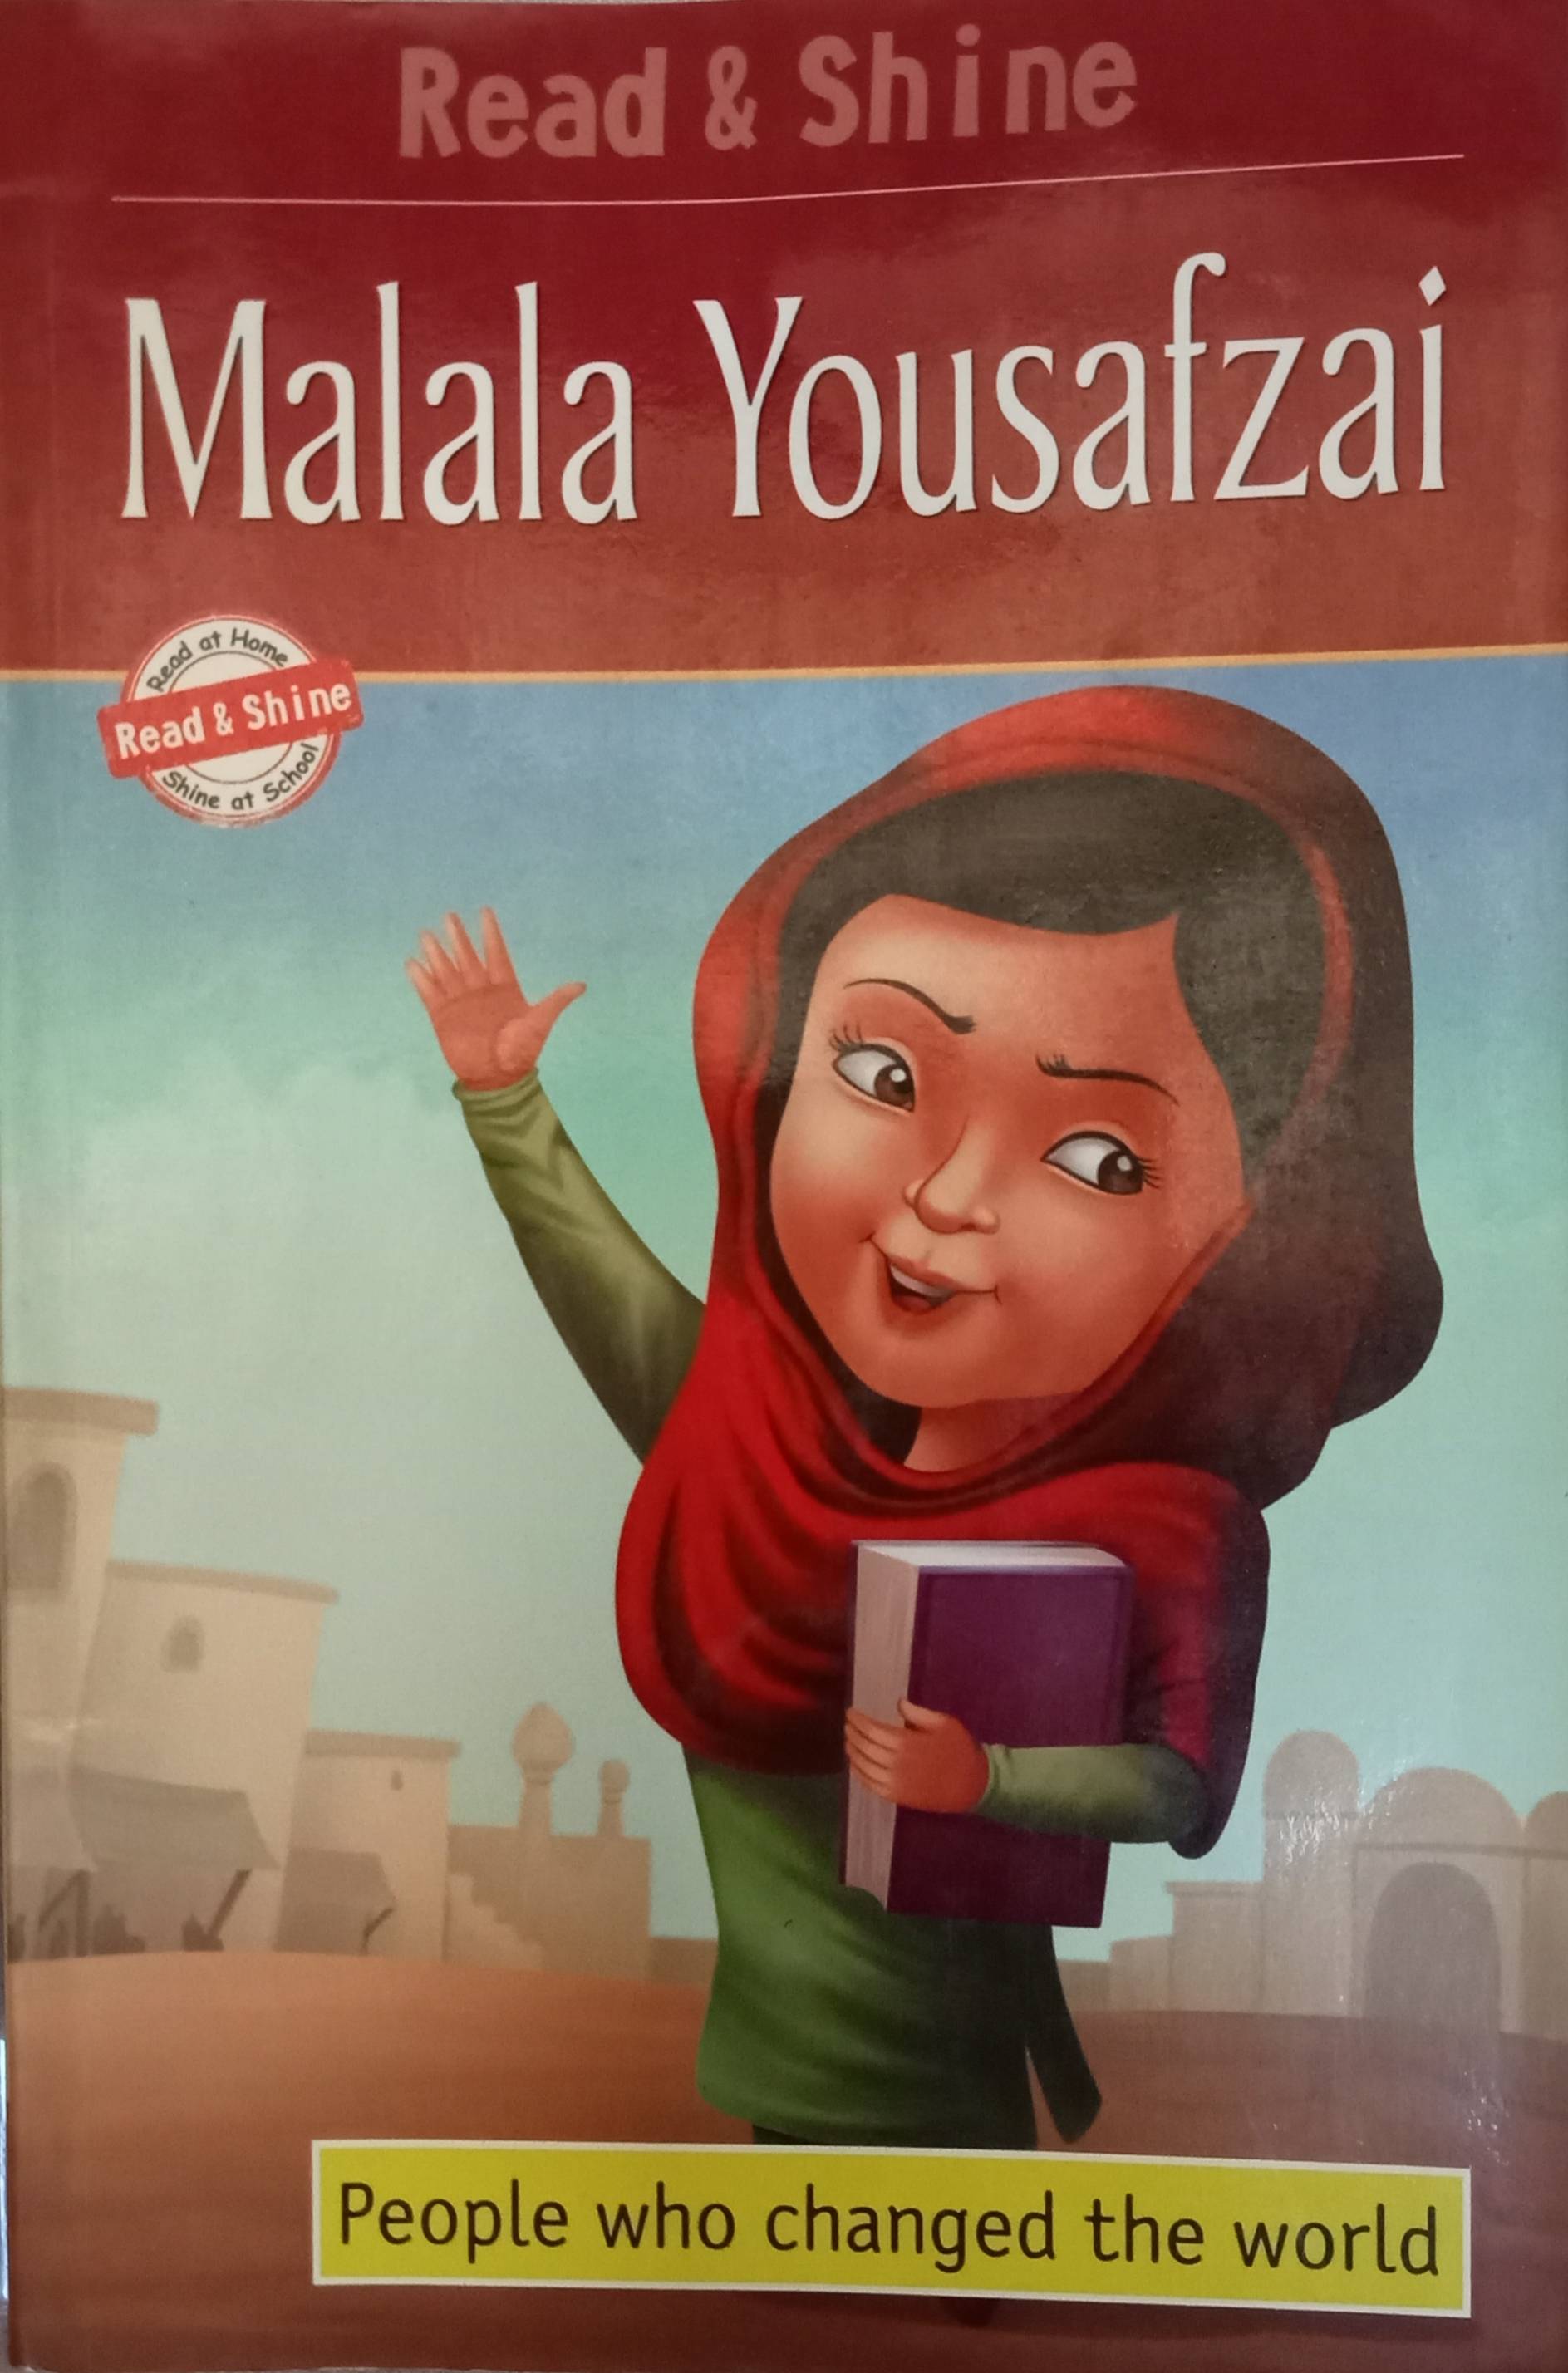 IMG : Malala Yousafzai